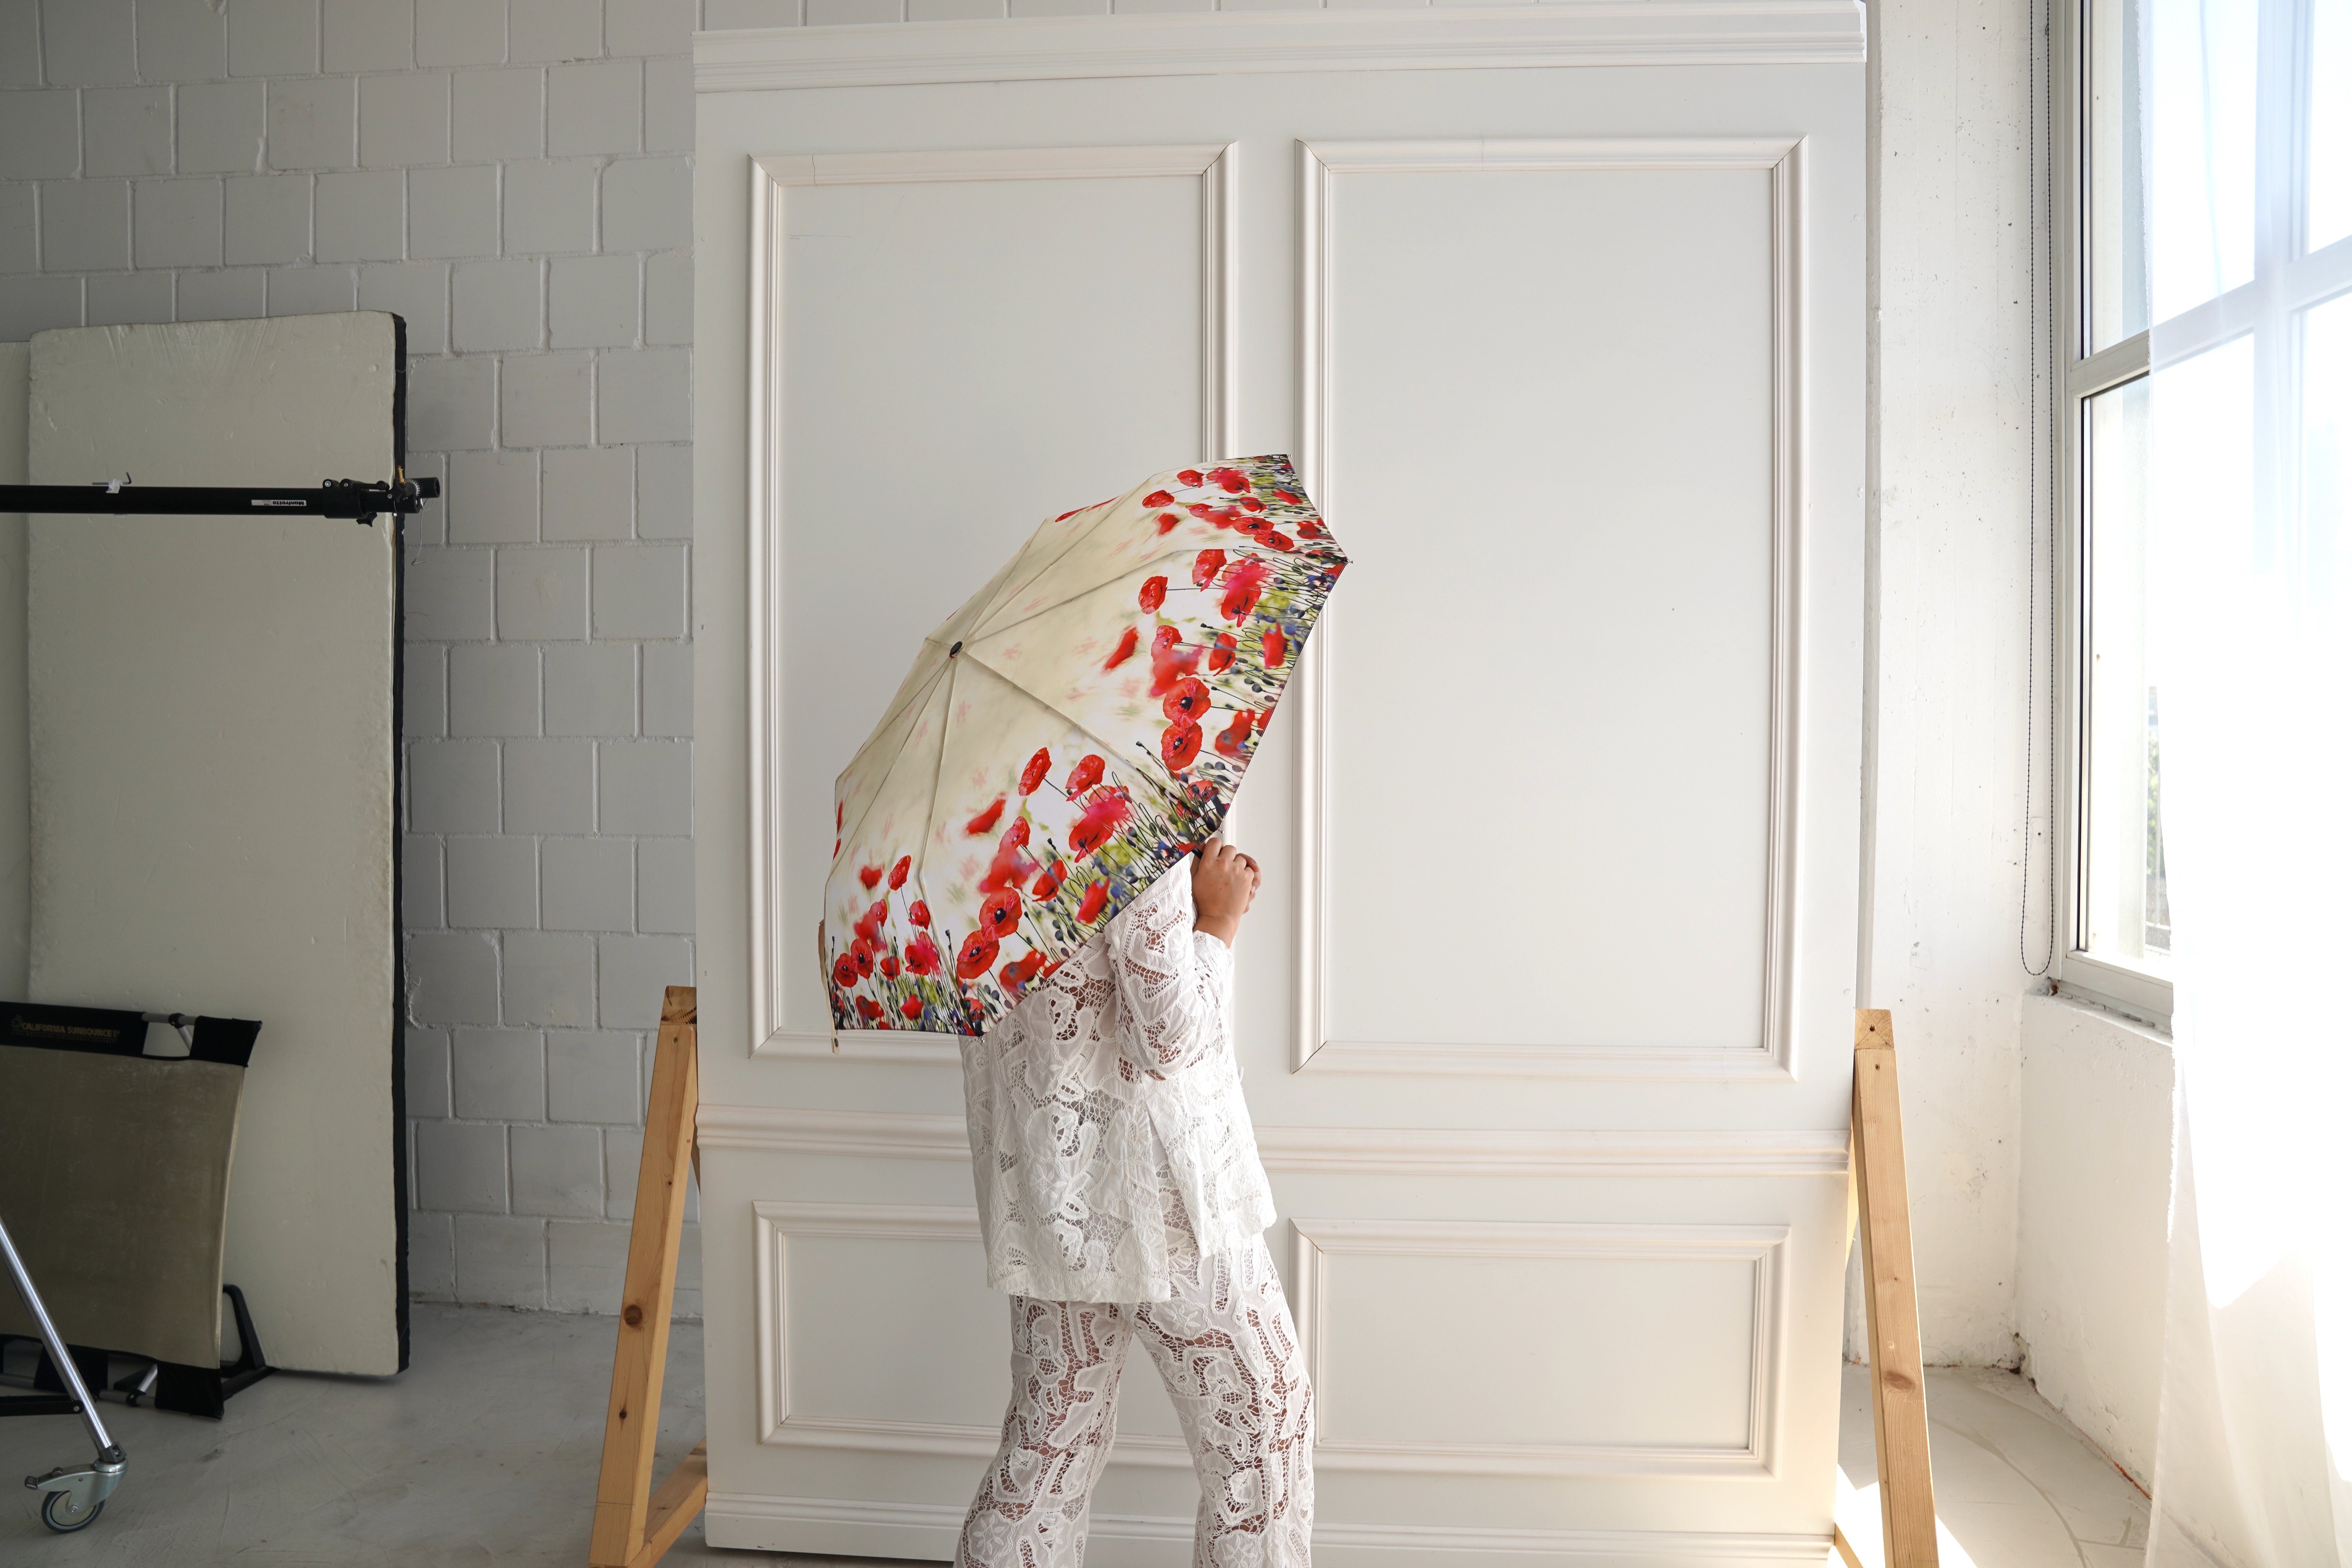 Stabil Taschenregenschirm Mohnblumen Blüten Auf-Zu-Automatik Motiv von Lilienfeld Motivschirm